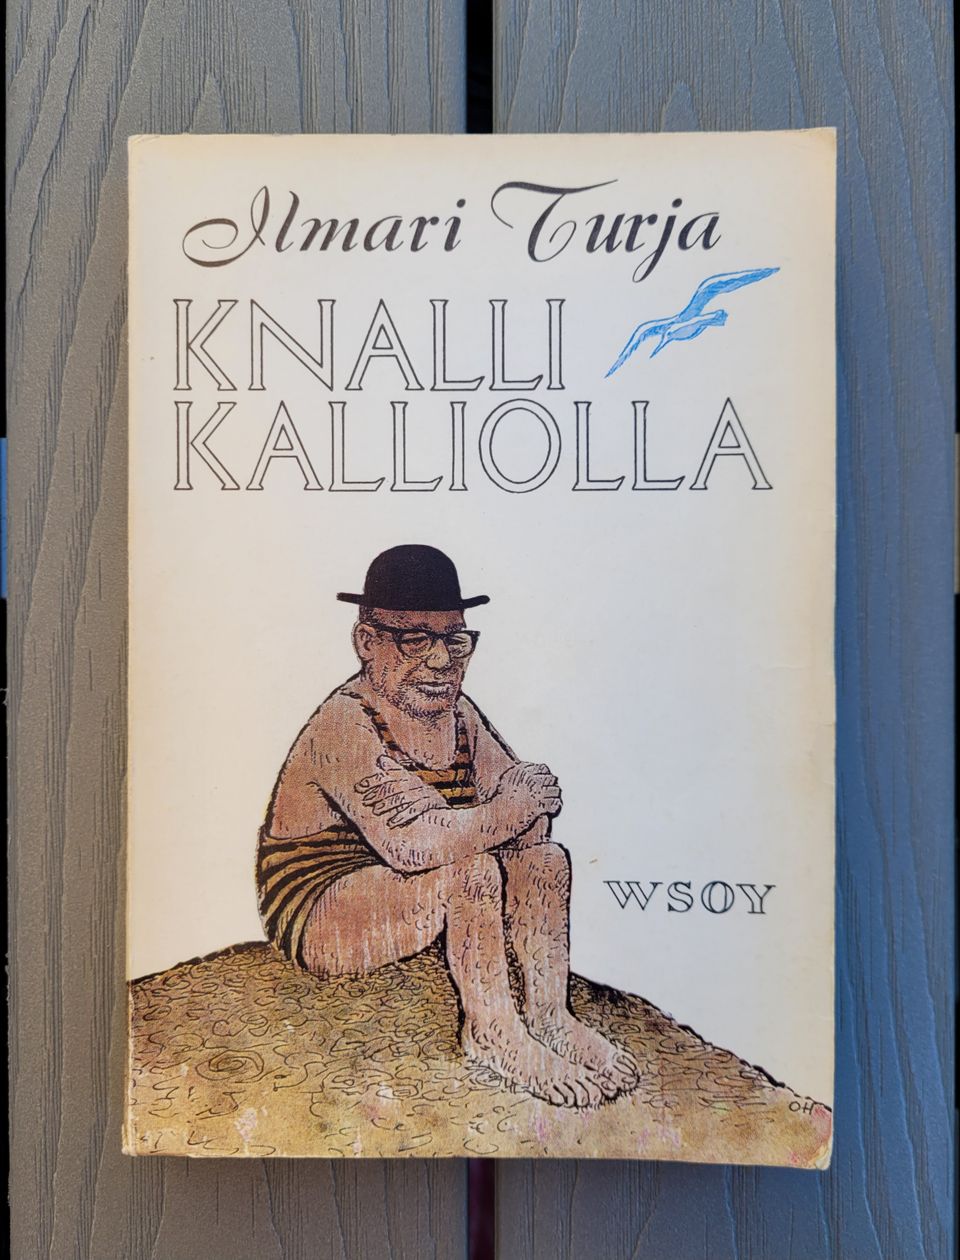 Ilmari Turja: Knalli kalliolla (1964)